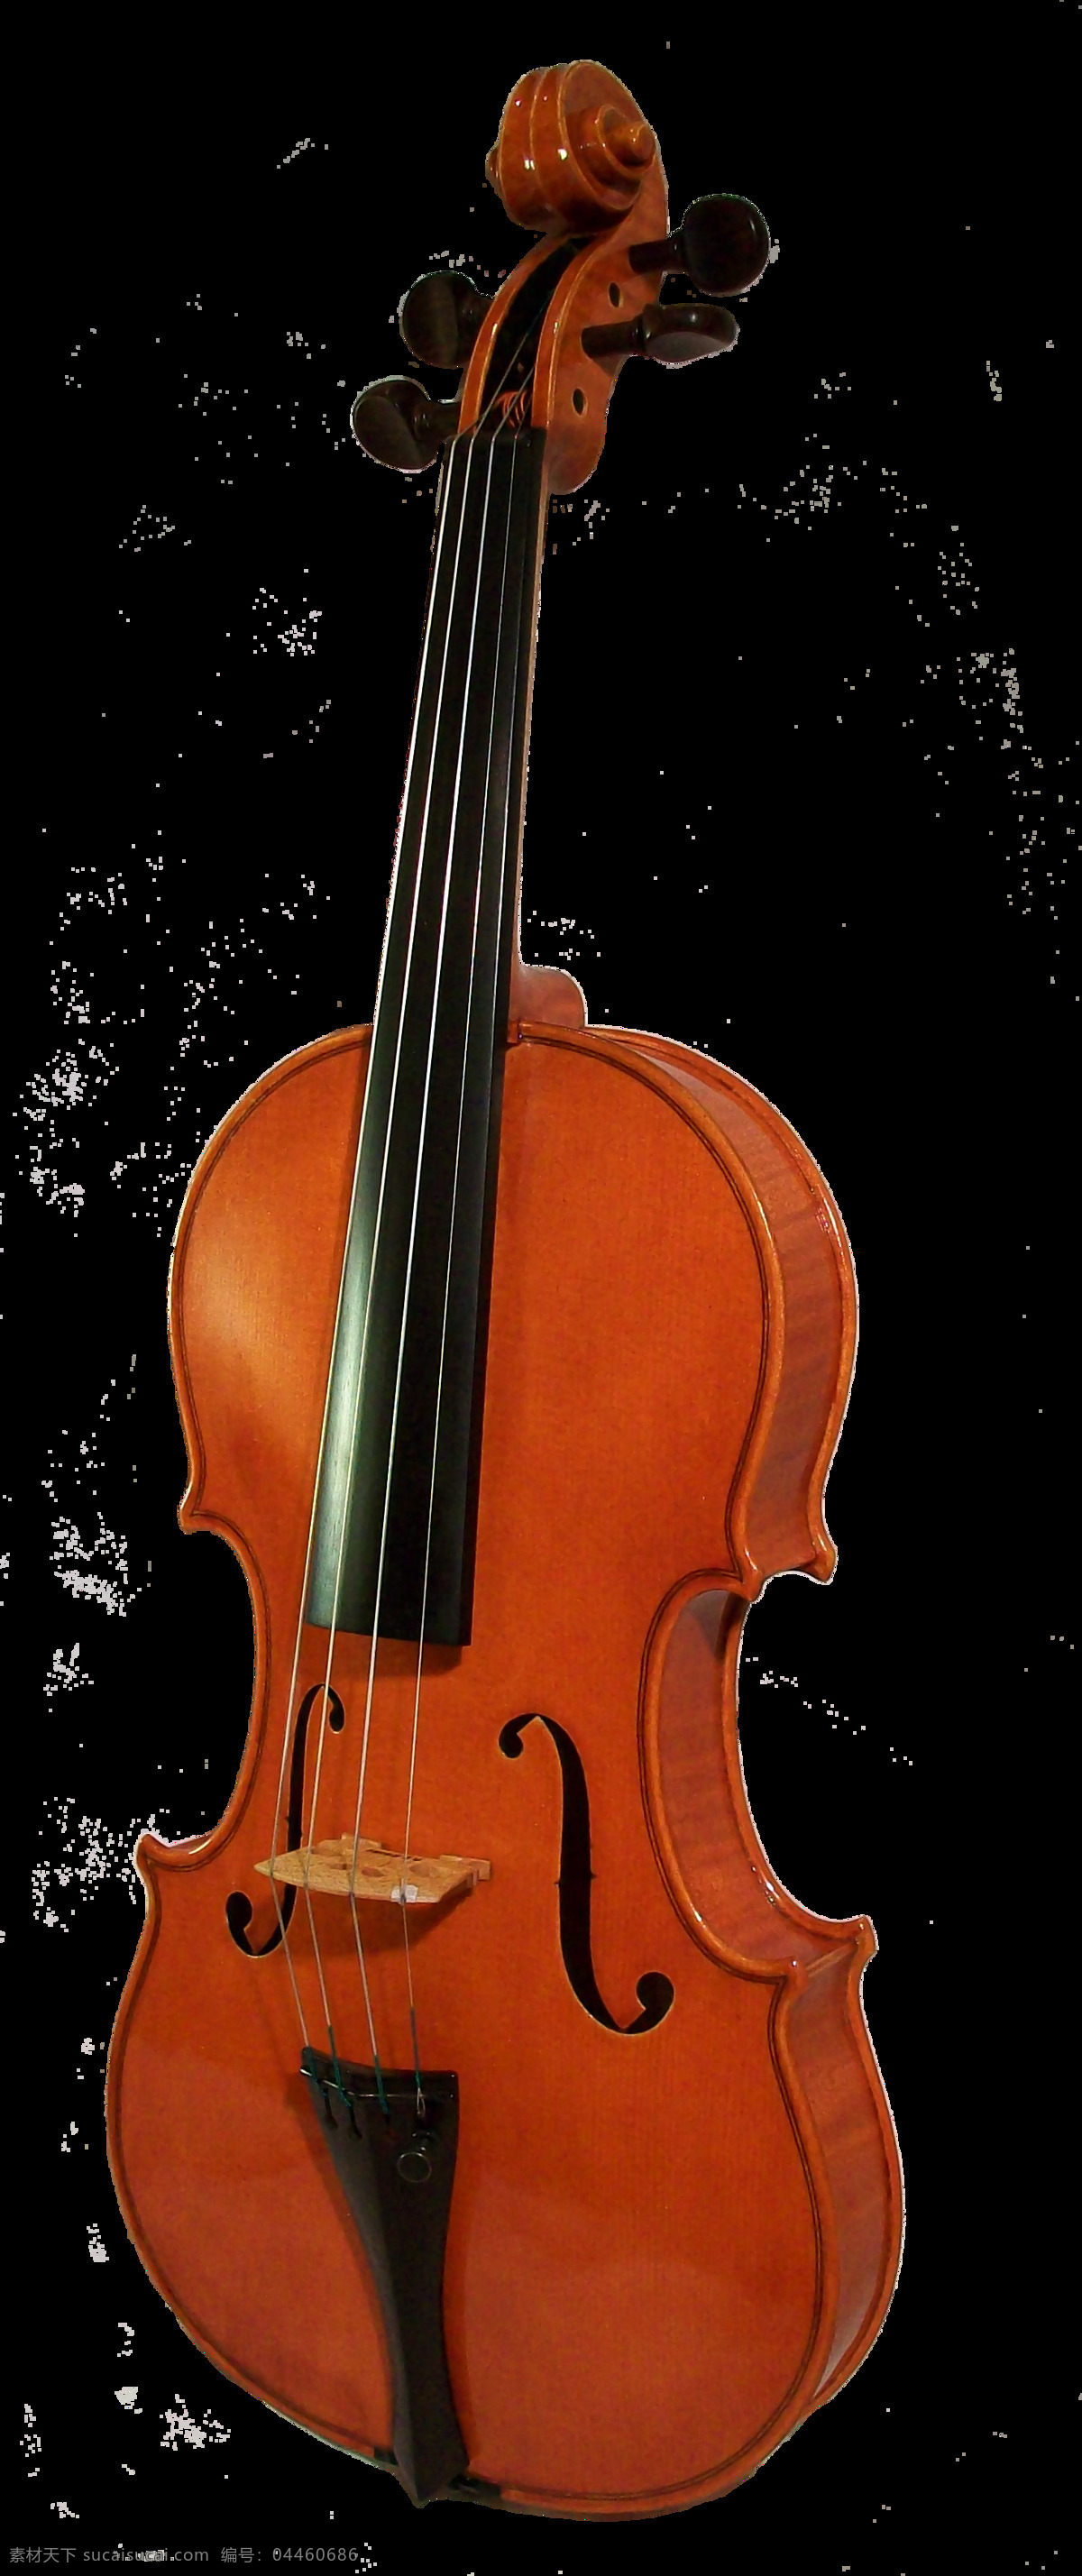 西洋 乐器 小提琴 西洋乐器 音乐 文艺 拉奏 美妙歌声 悠扬声乐